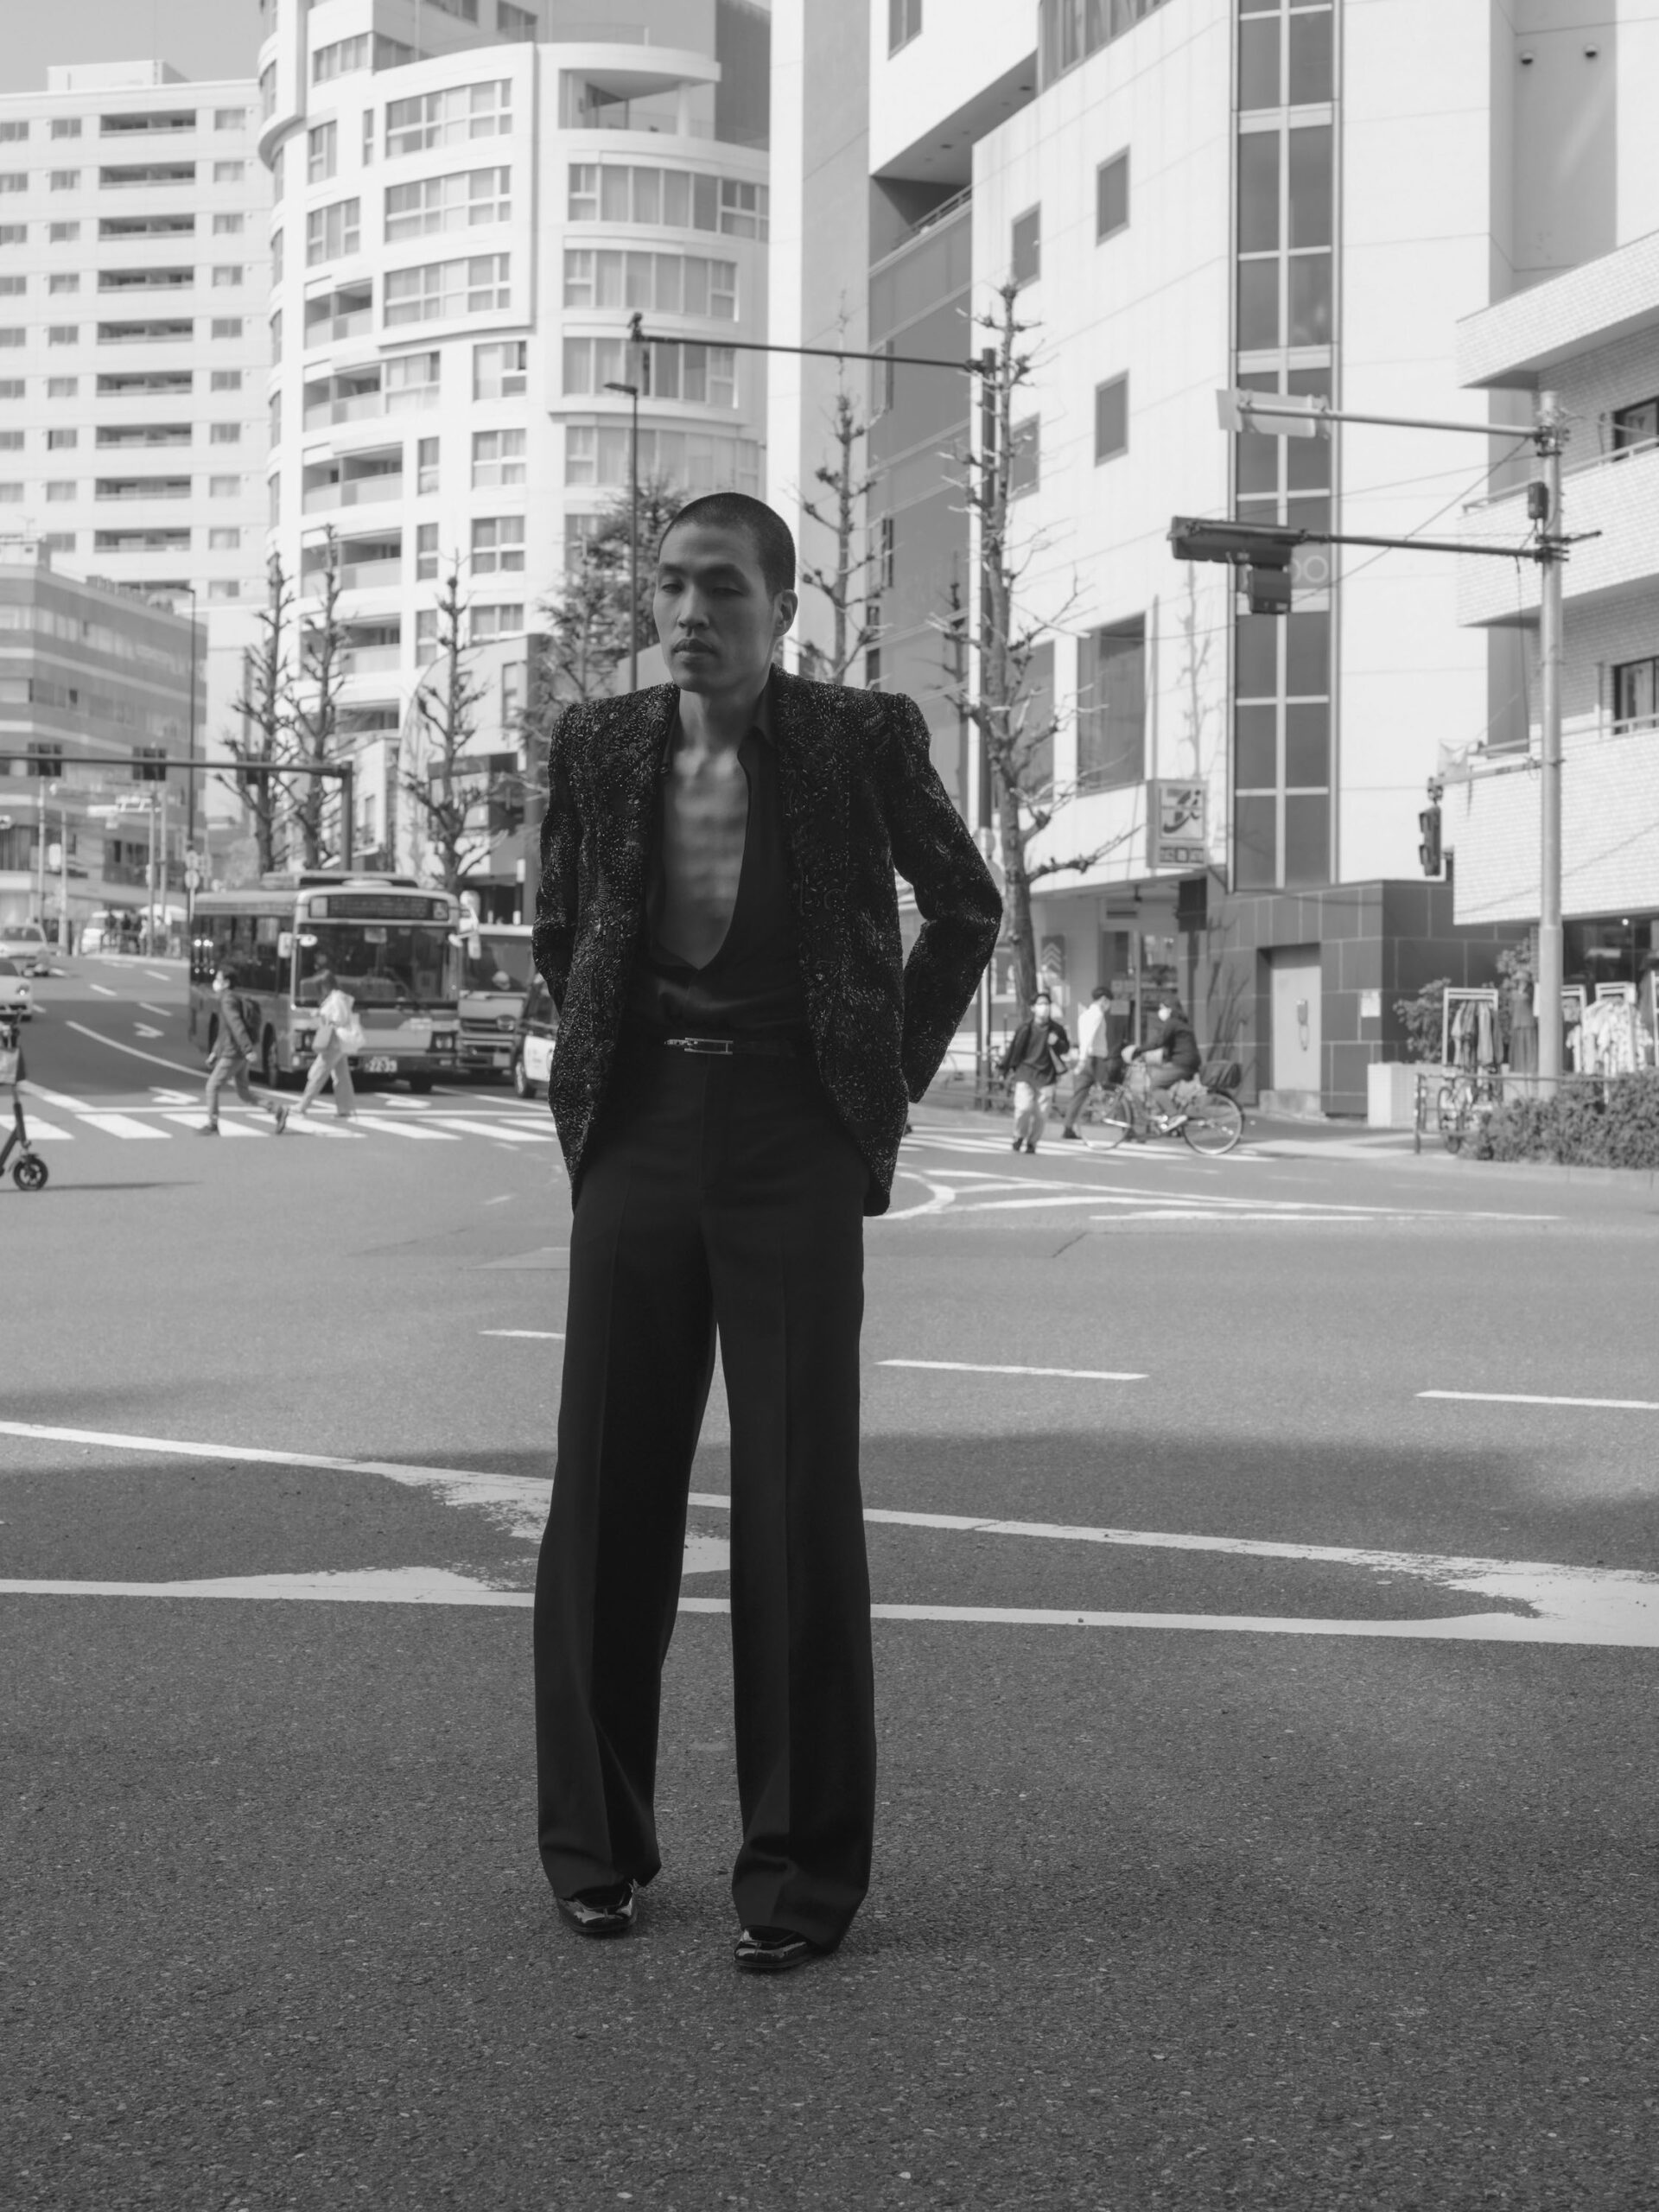 “東京”から選出されたホンマタカシ
TAKASHI HOMMA, MAGNUM PHOTOS GUEST PHOTOGRAPHER FOR SAINT LAURENT BY ANTHONY VACCARELLO